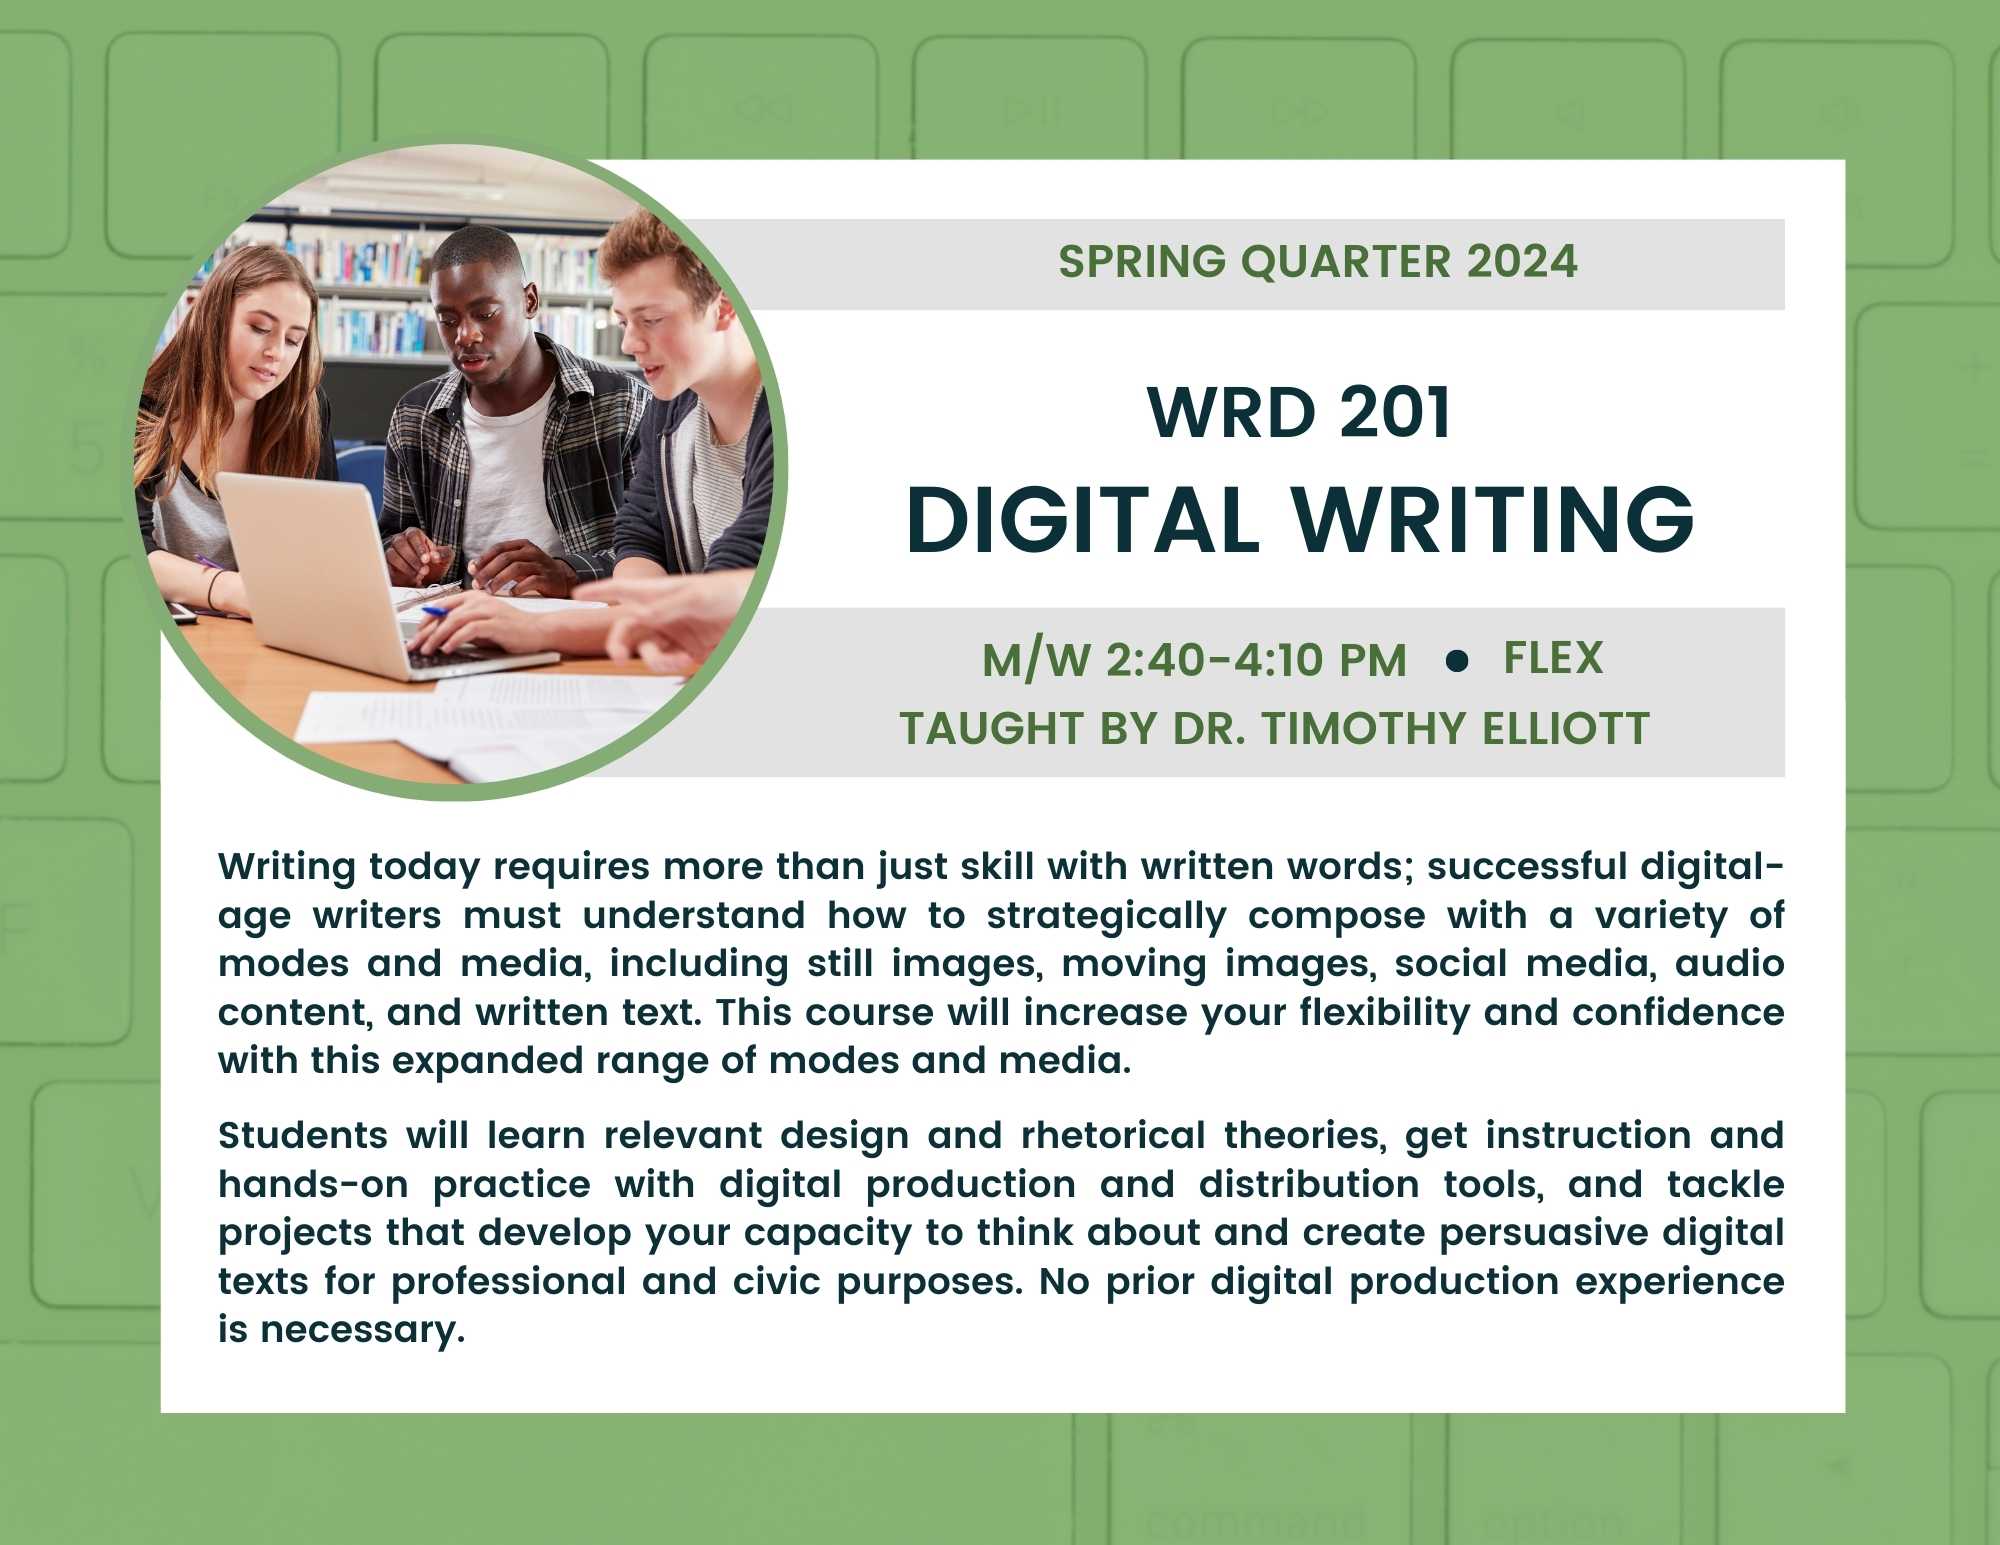 WRD 201: Digital Writing